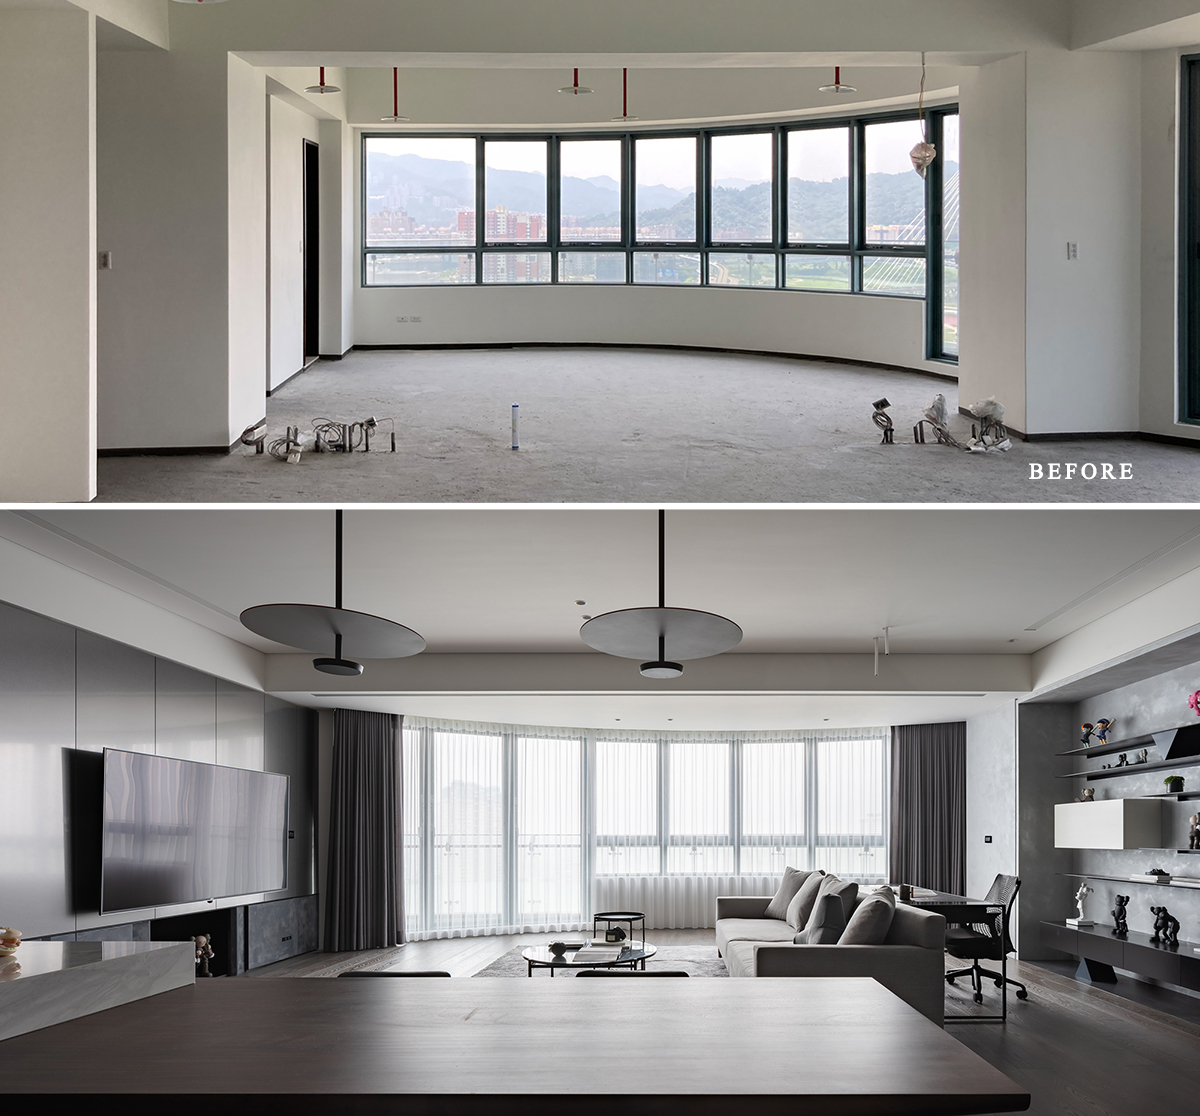 Đội ngũ của 317studio đã hoàn thành dự án thiết kế nội thất cho căn hộ của anh chàng độc thân sống tại thành phố Tân Bắc, Đài Loan.